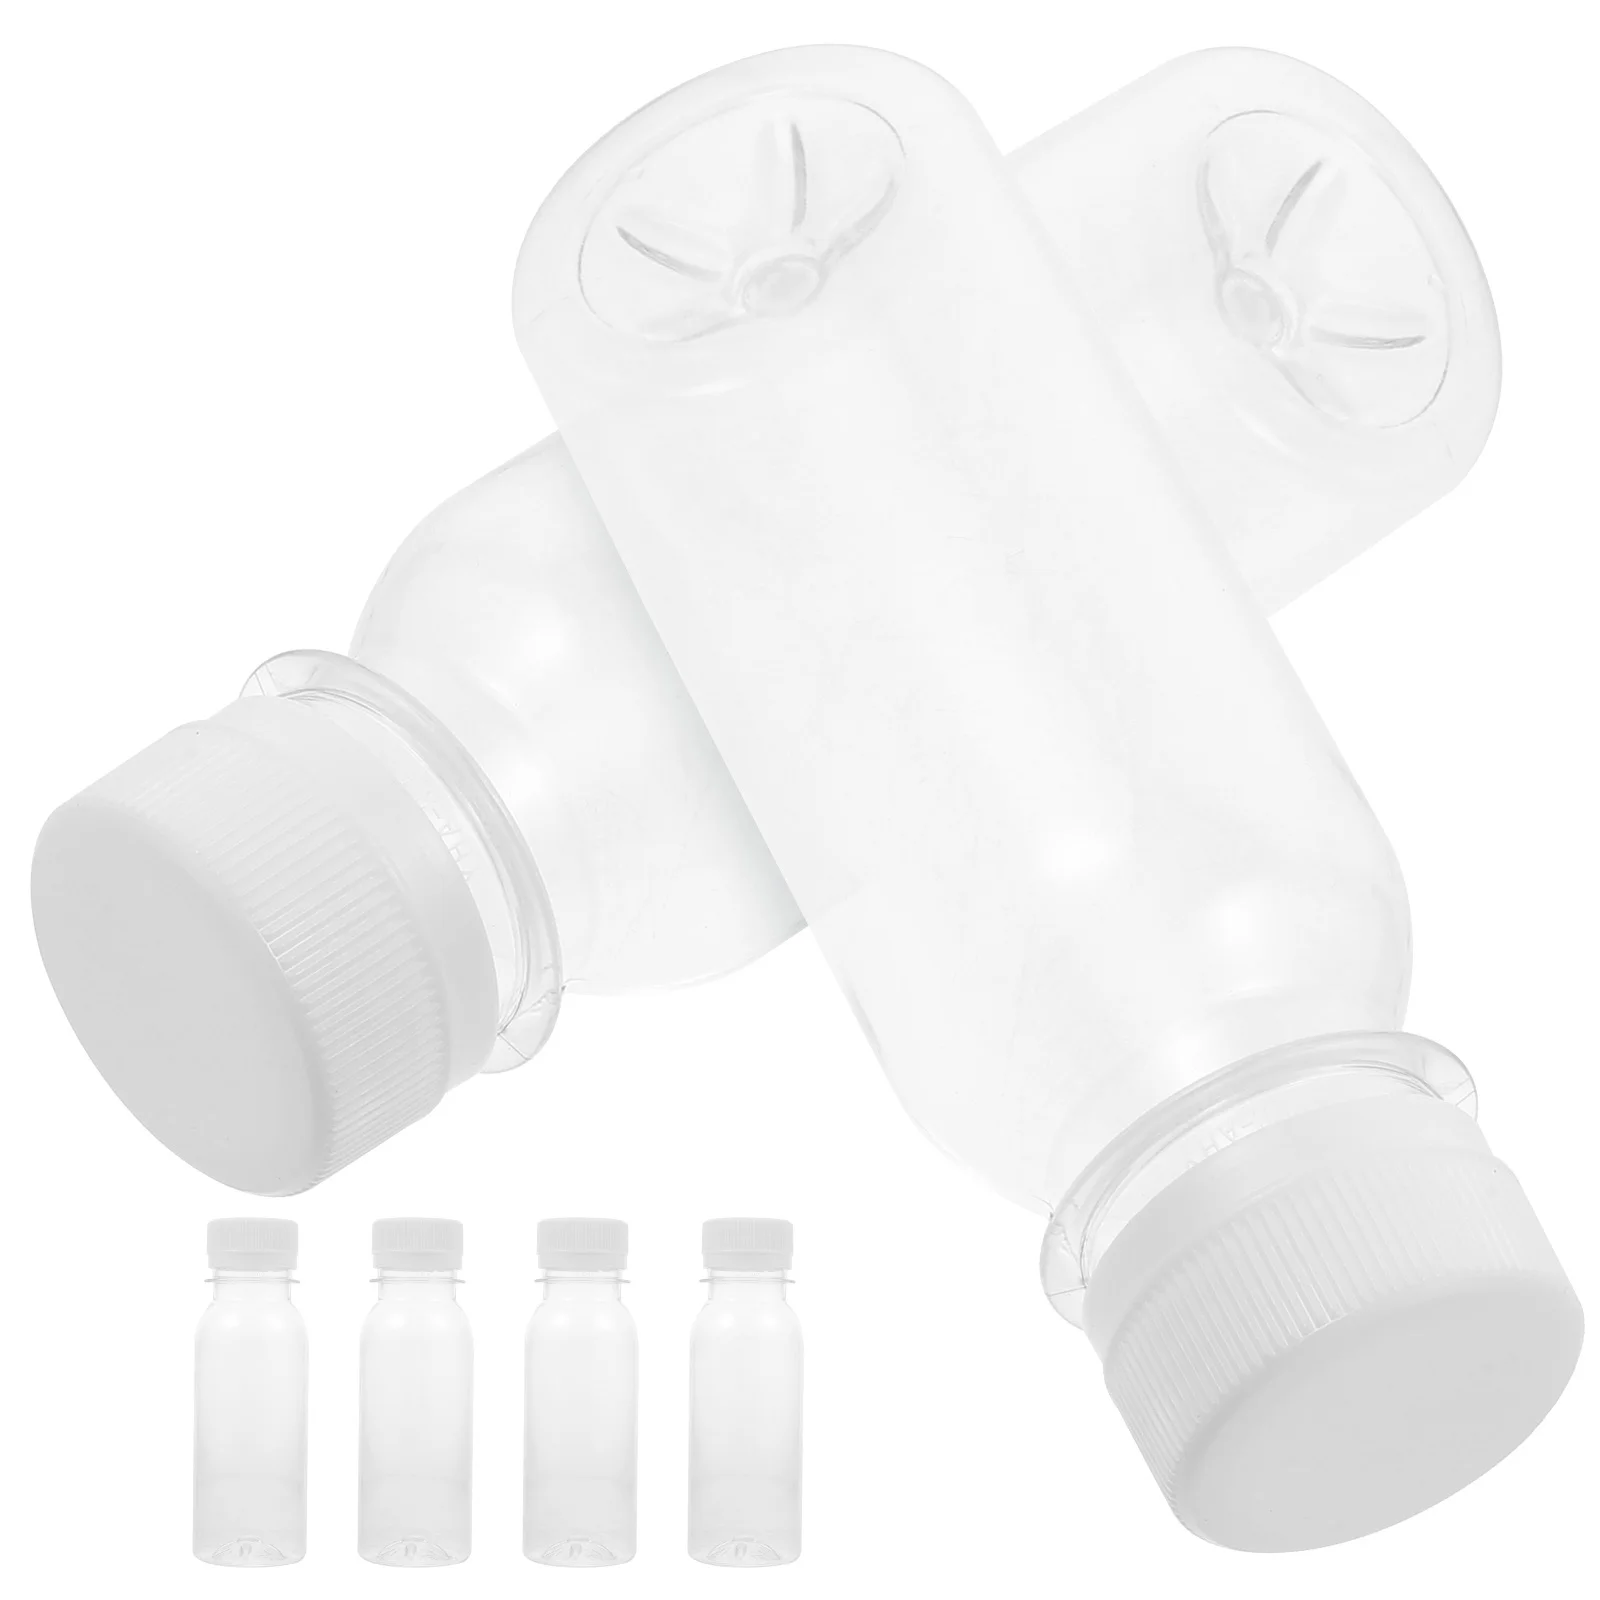 

12 Pcs Leakproof Water Bottle Milk Juice Container Bottles Plastic Jug Small Lids Reusable Mini Fridge Containers Child